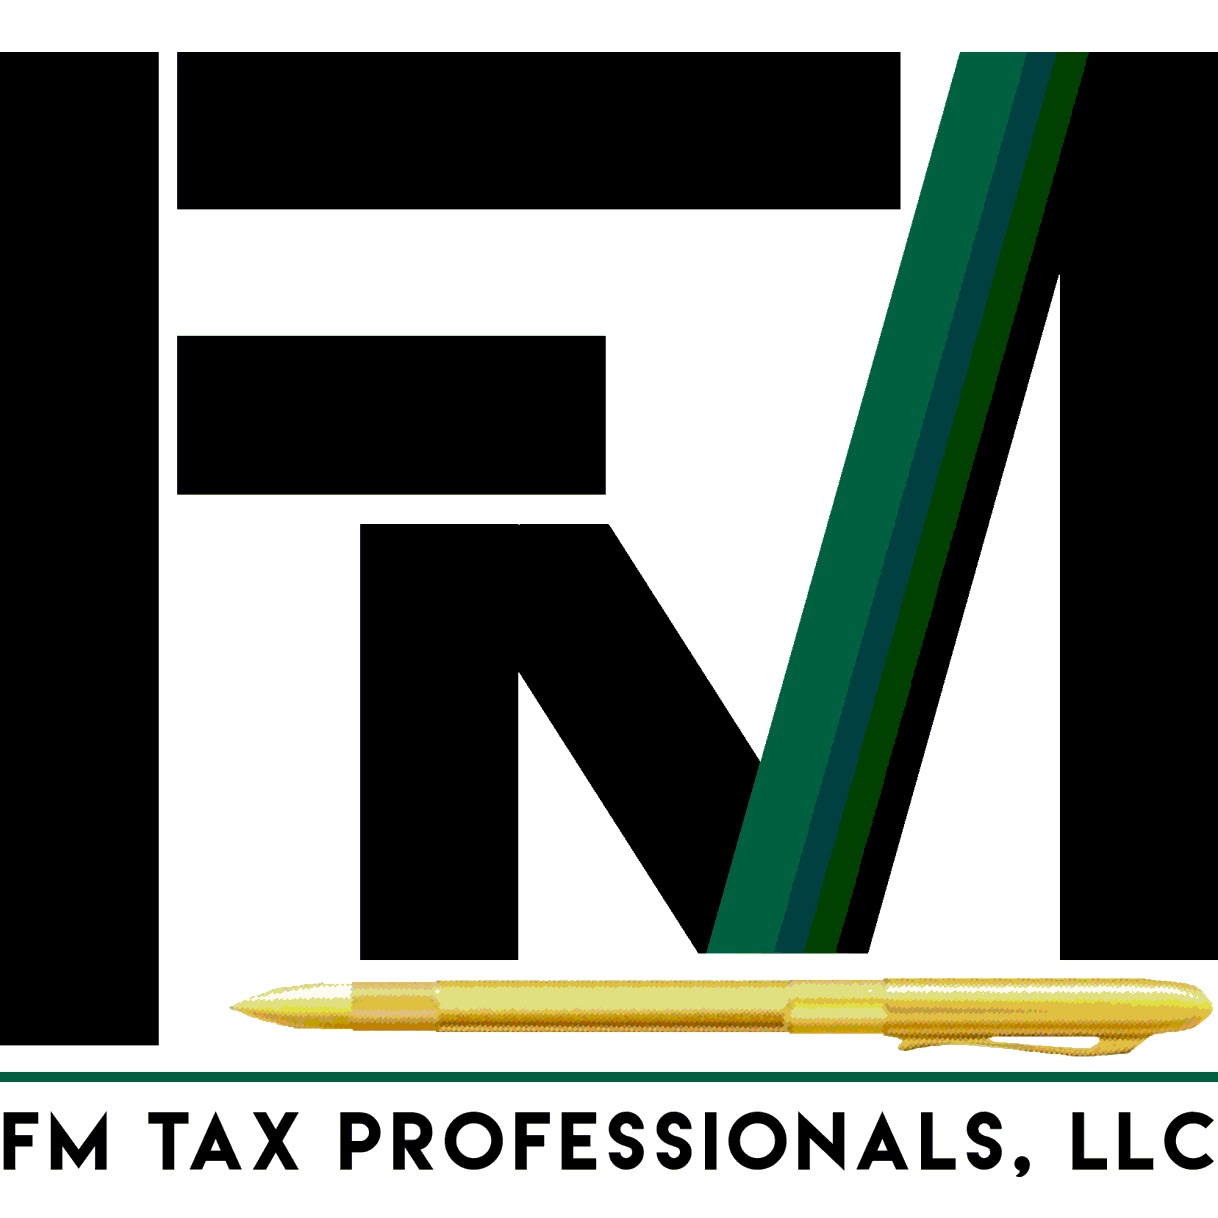 FM TAX PROFESSIONALS, LLC